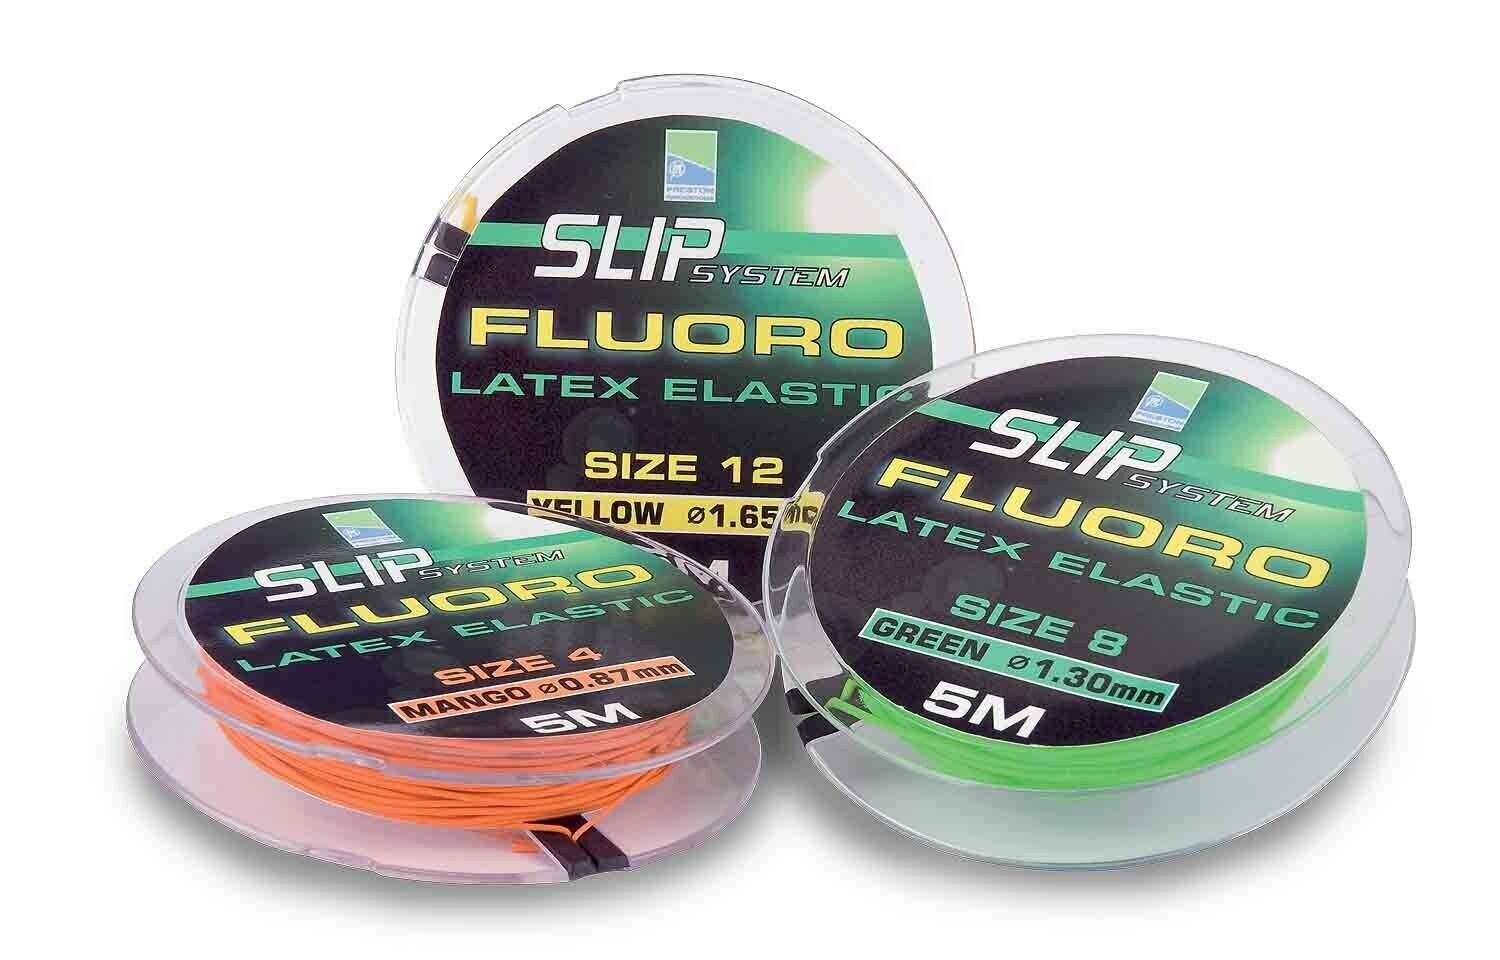 Preston Innovations Fluoro Slip Elastic Sitz 5